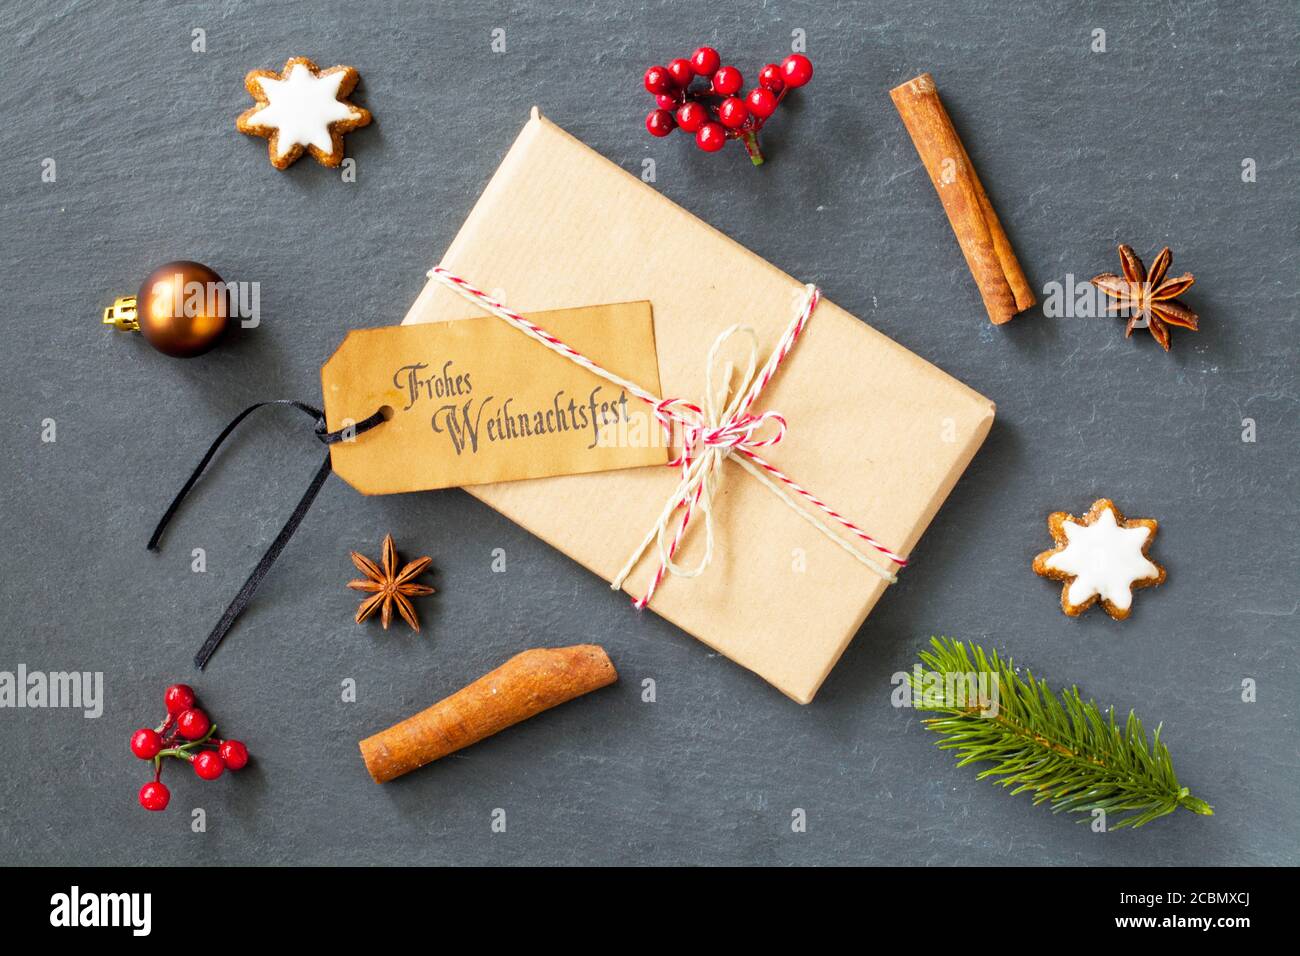 Confezione regalo con un tag 'Frohe Weihnachtsfest - buon Natale' su di esso sul tavolo con decorazioni Foto Stock